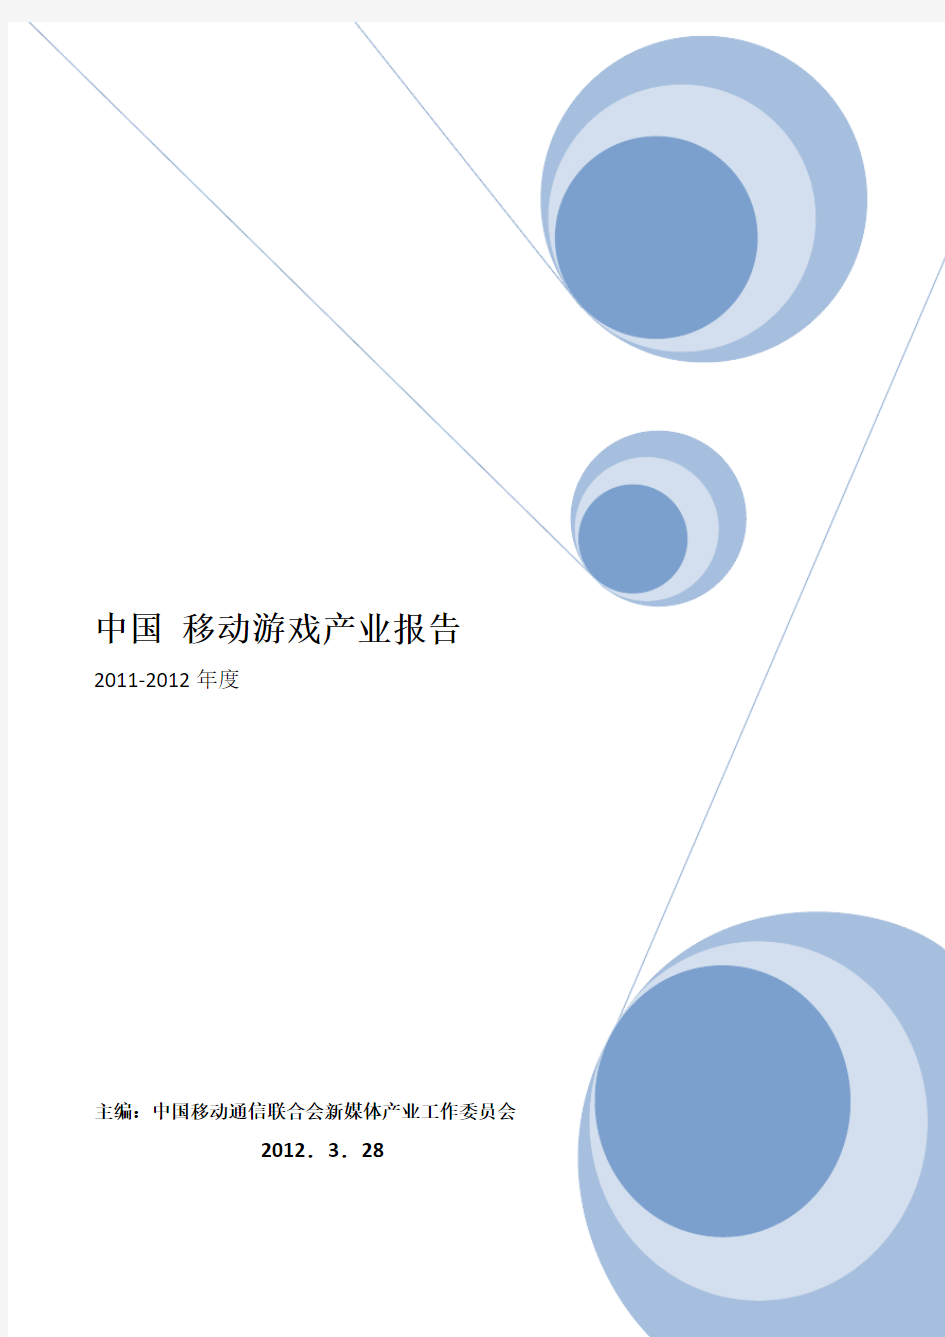 2011年中国移动游戏(手机游戏)产业年报